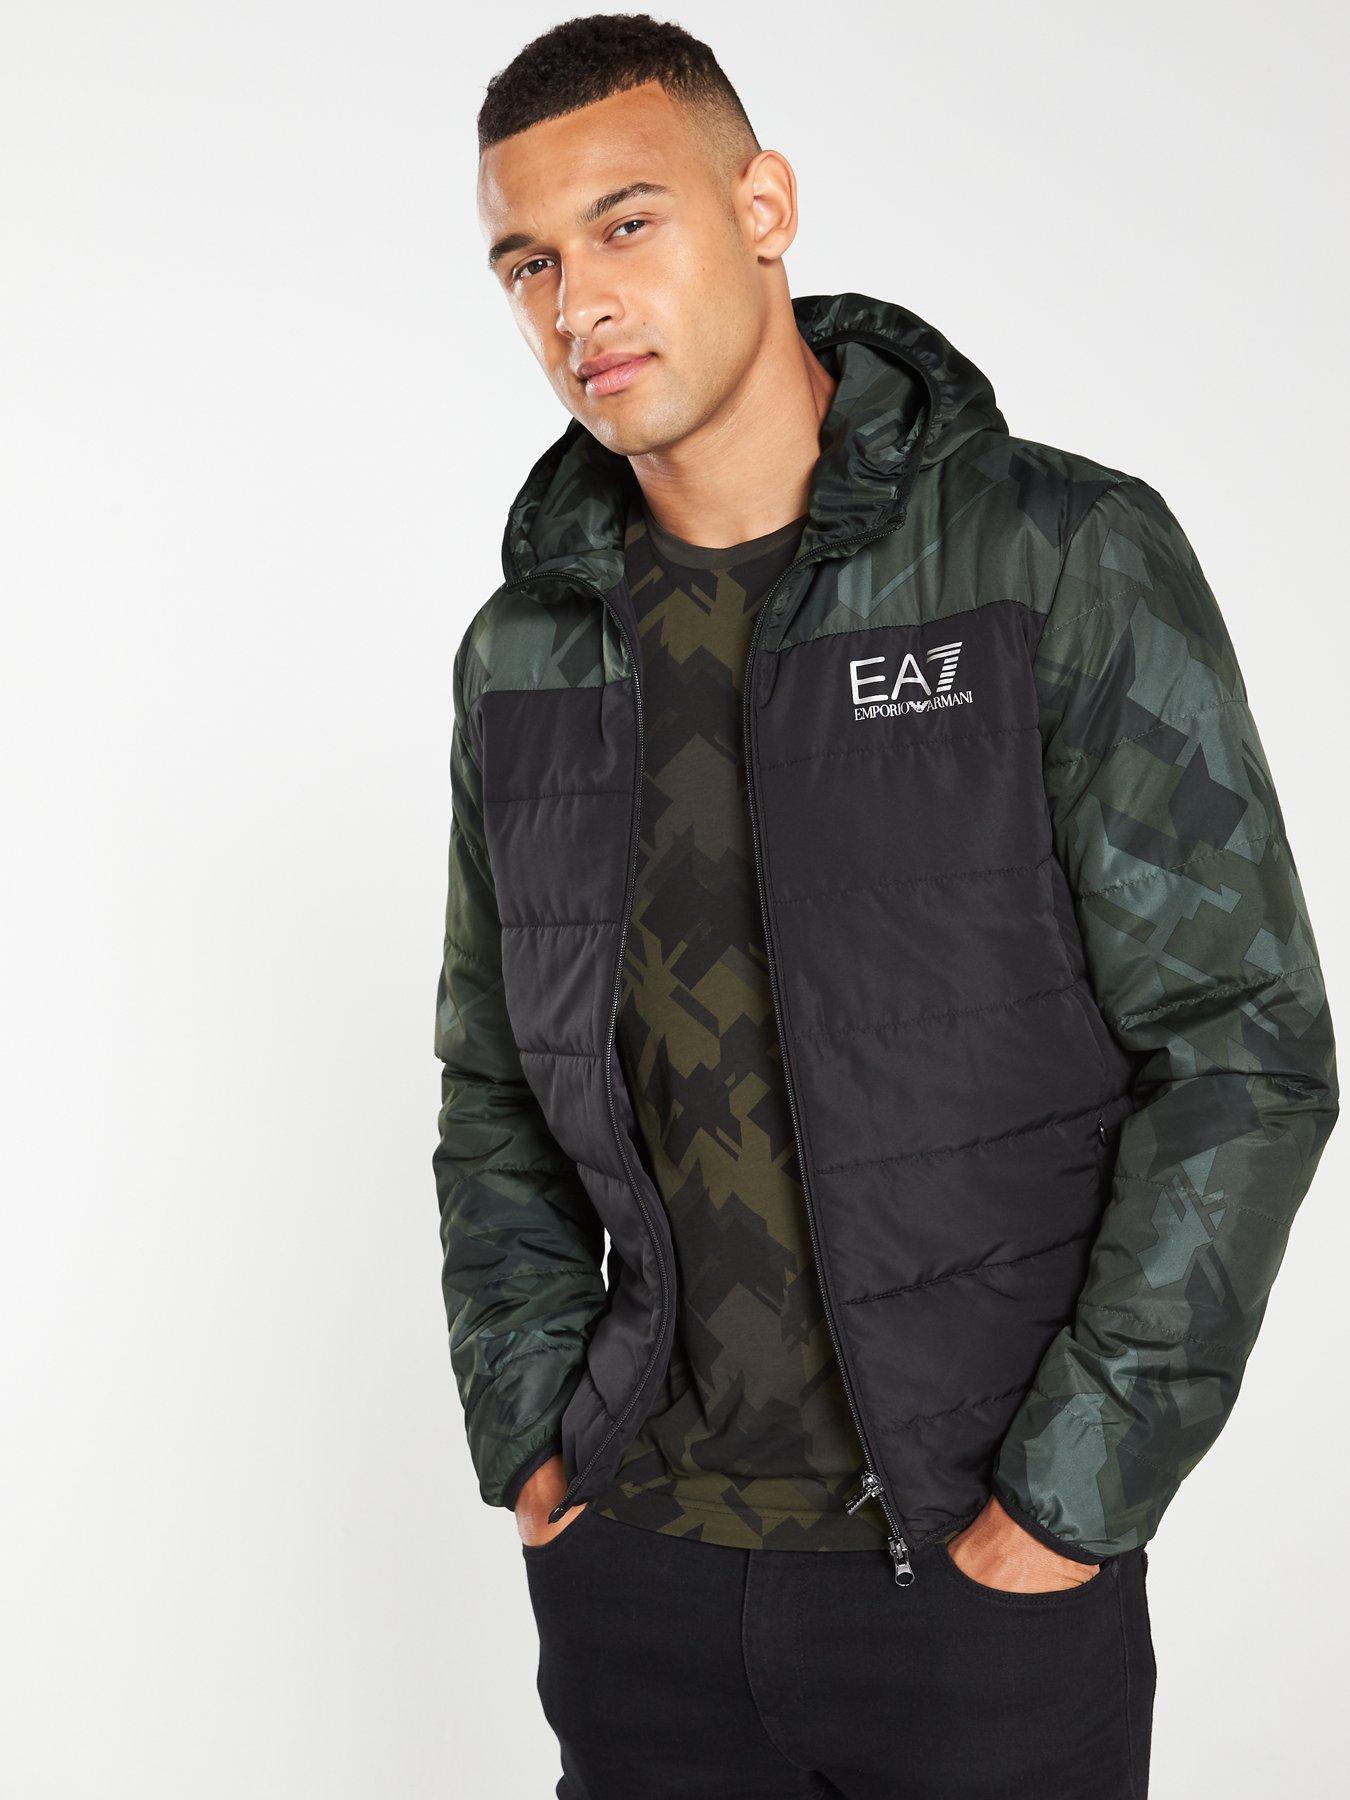 ea7 jackets